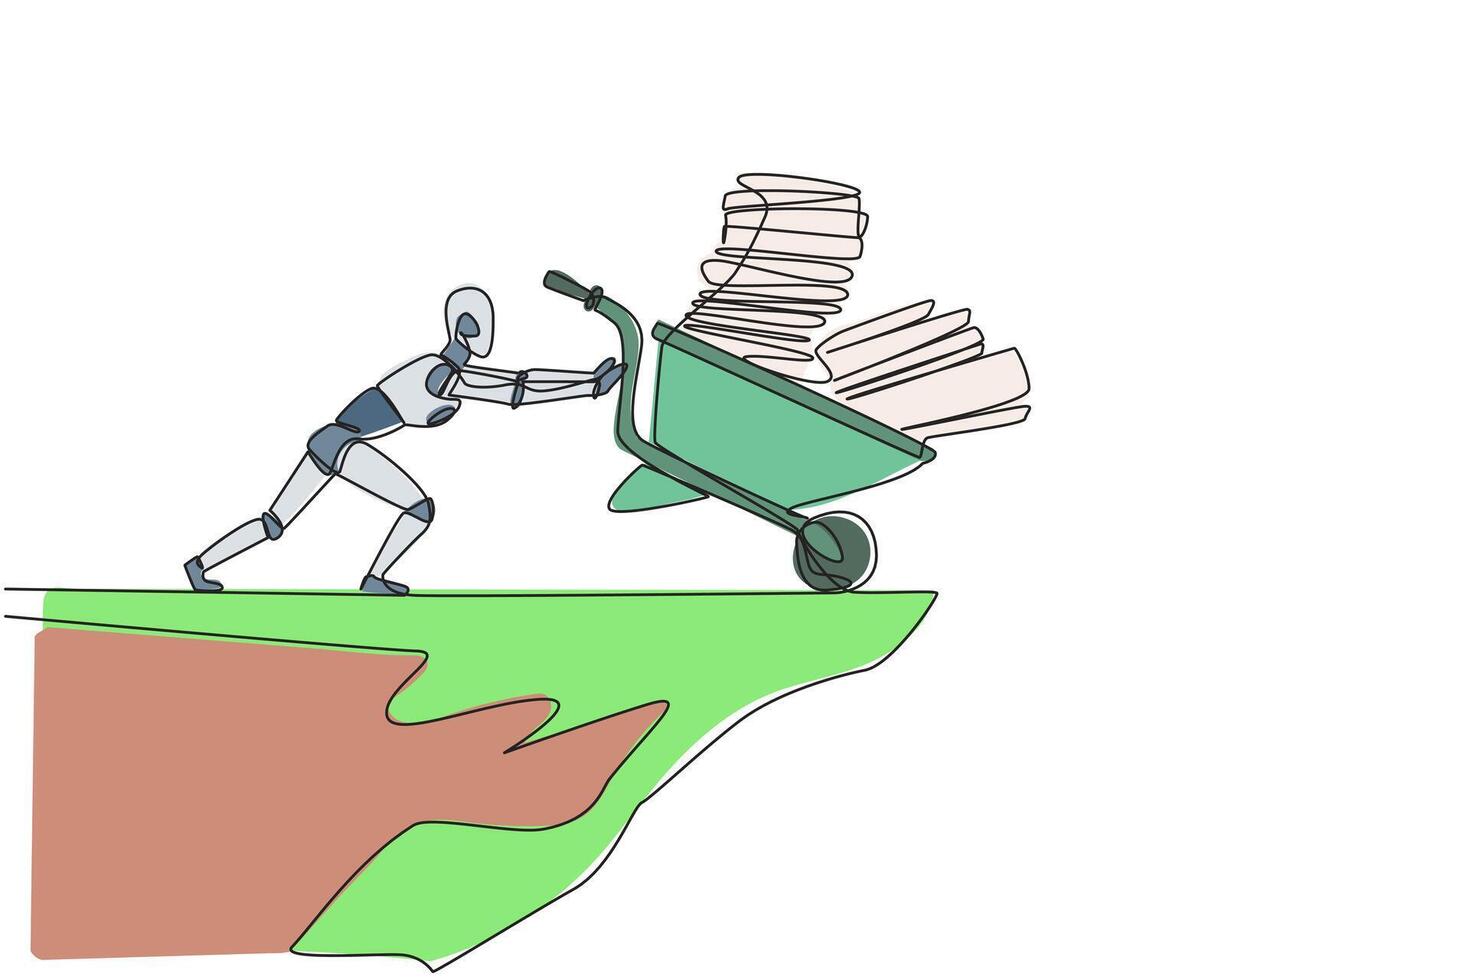 single doorlopend lijn tekening robot duwt een kruiwagen gevulde met aambeien van papier en bindmiddelen naar beneden van de rand van de klif. robot kunstmatig intelligentie. een lijn ontwerp vector illustratie